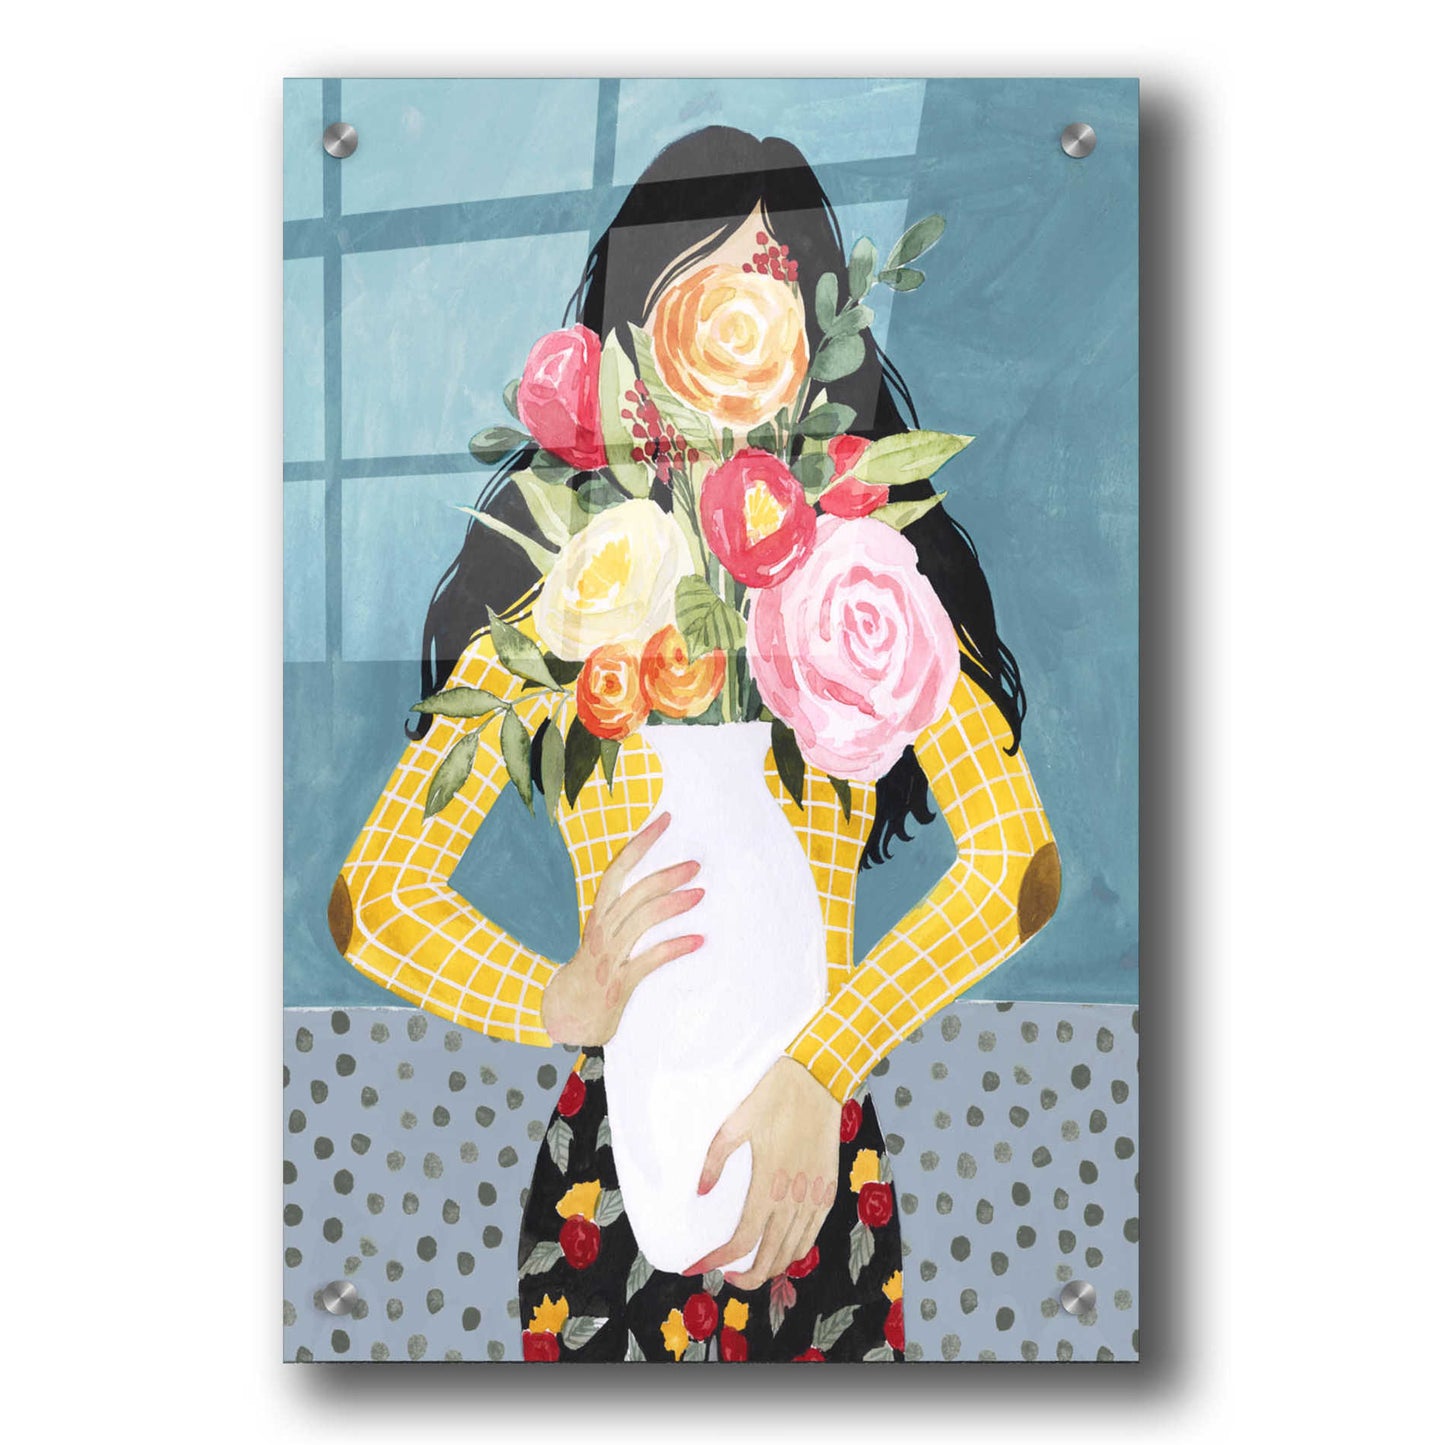 Epic Art 'Flower Vase Girl II' by Grace Popp, Acrylic Wall Glass,24x36